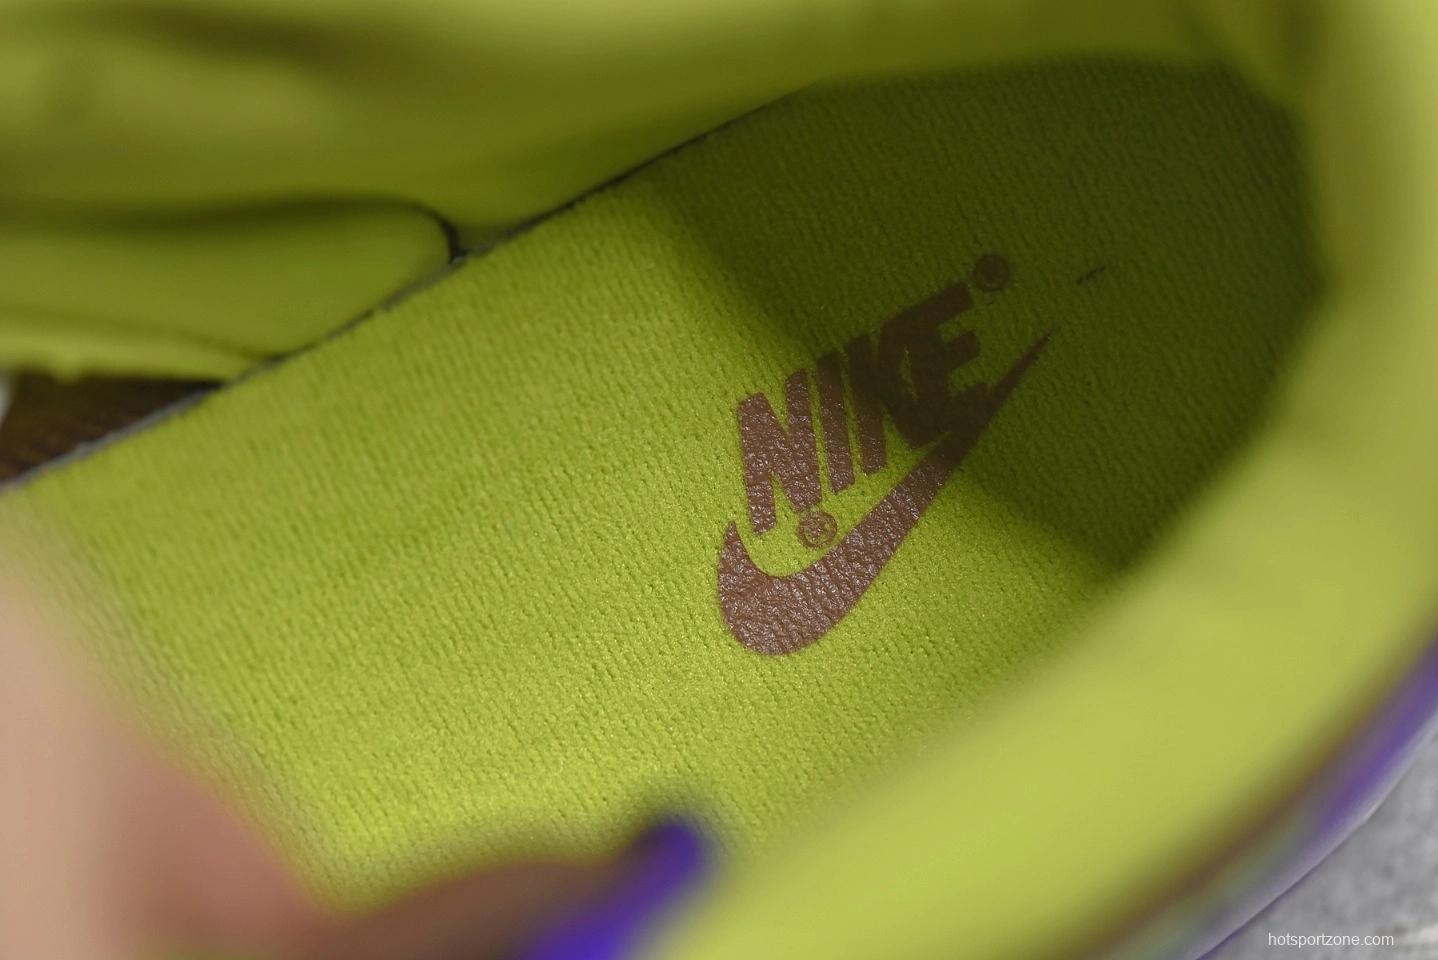 Nike Dunk Low SP “Veneer”